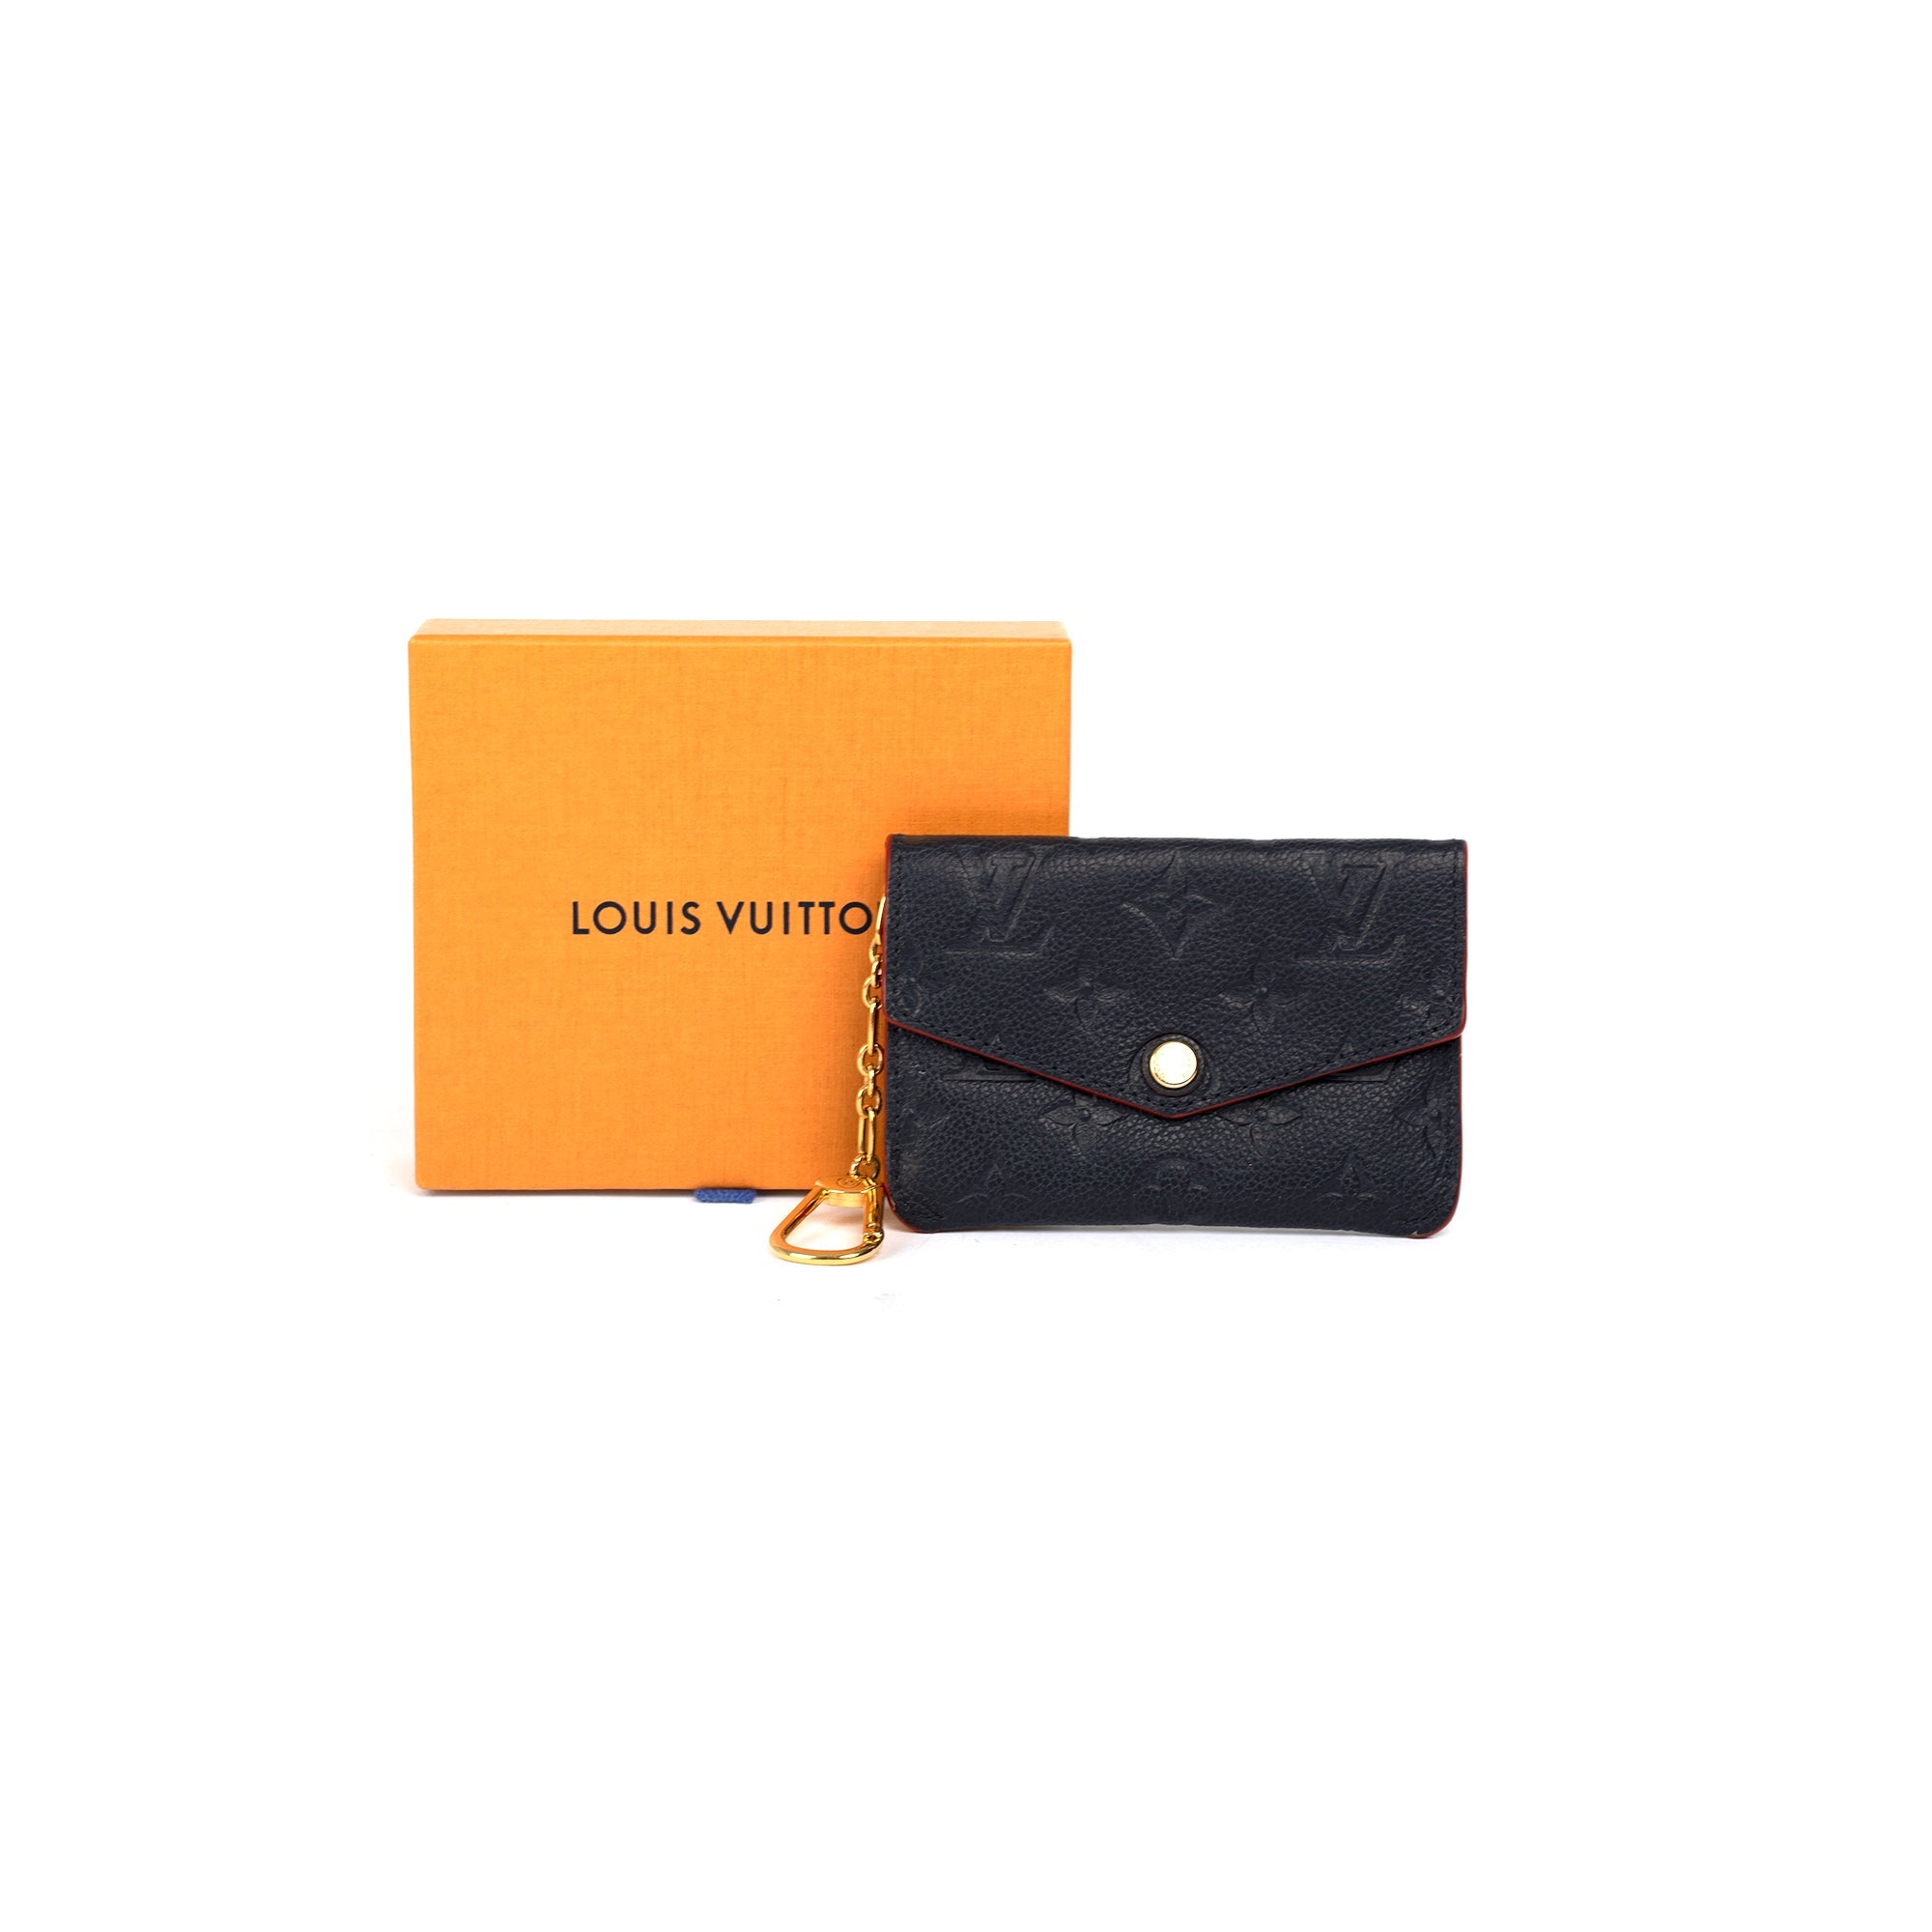 Louis Vuitton 2020 Monogram Empreinte Key Pouch w/ Box